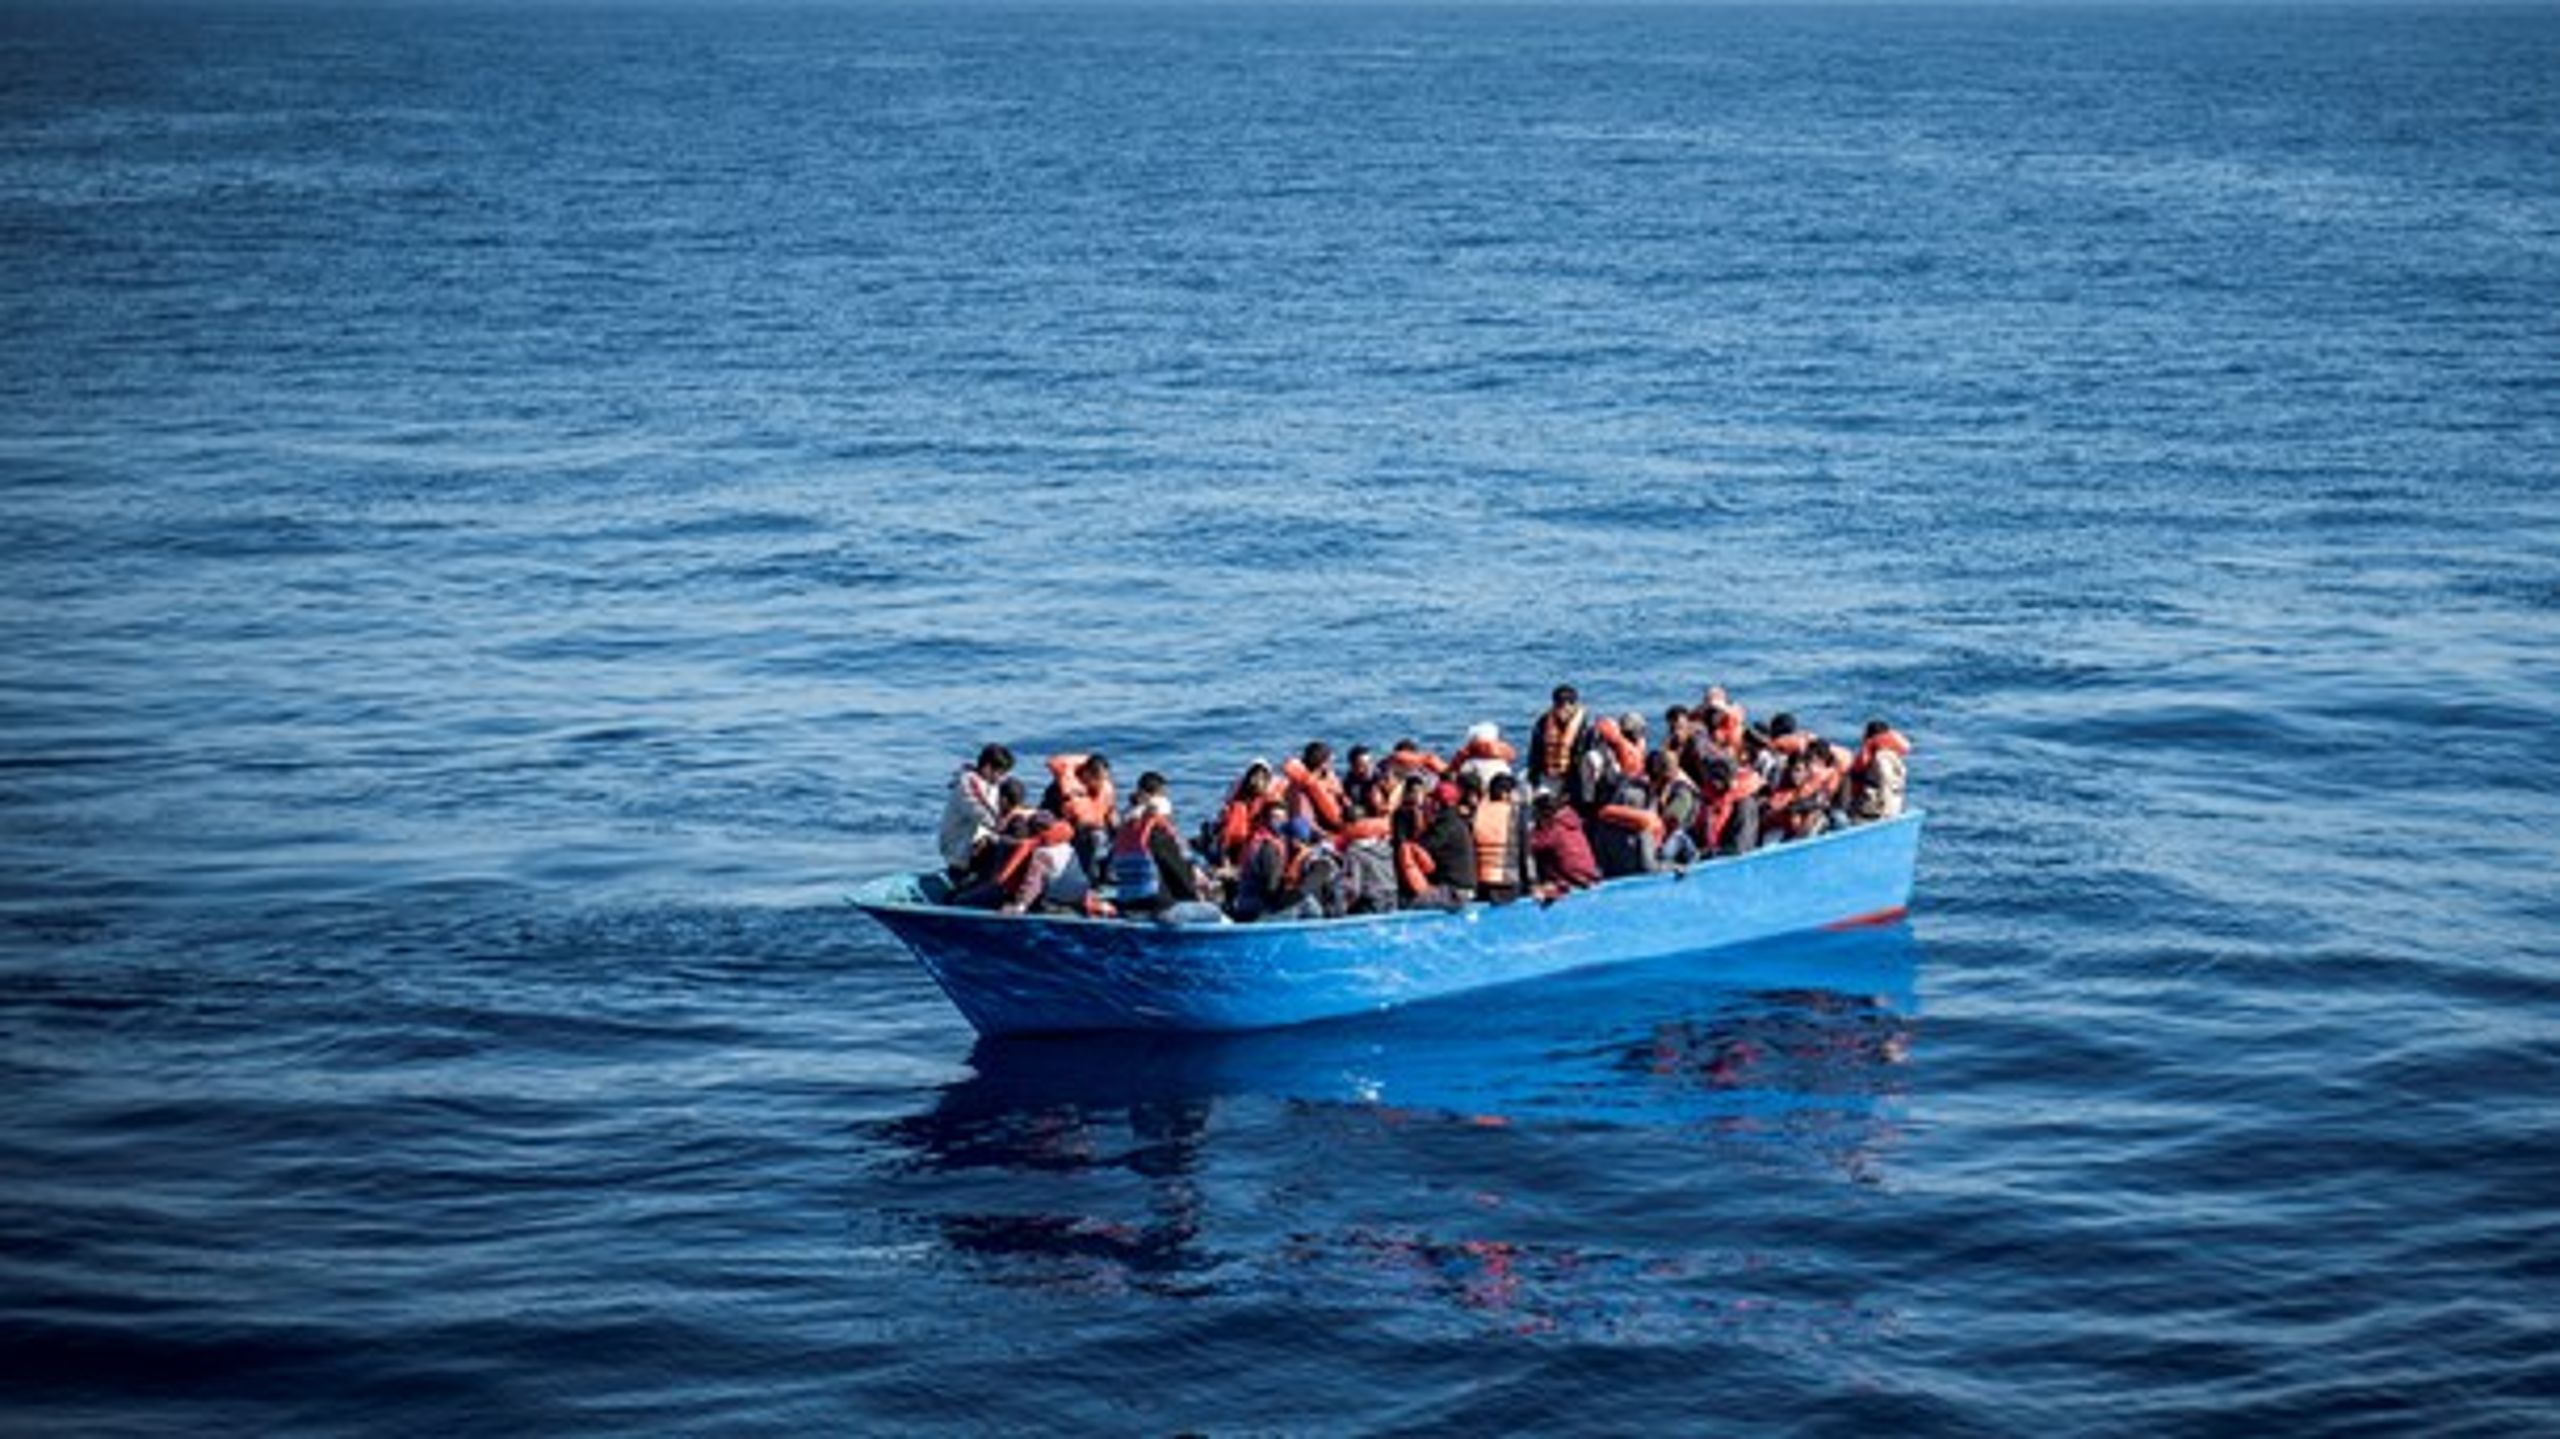 Flygtninge og migranter i&nbsp;synkefærdige gummibåde skabte&nbsp;fornyet debat om udlændingepolitikken. Men det er ikke nødvendigvis et venstreorienteret synspunkt at mene, at et stort antal&nbsp;asylansøgere fra Afrika og Mellemøsten skal have ophold i Europa.<br>